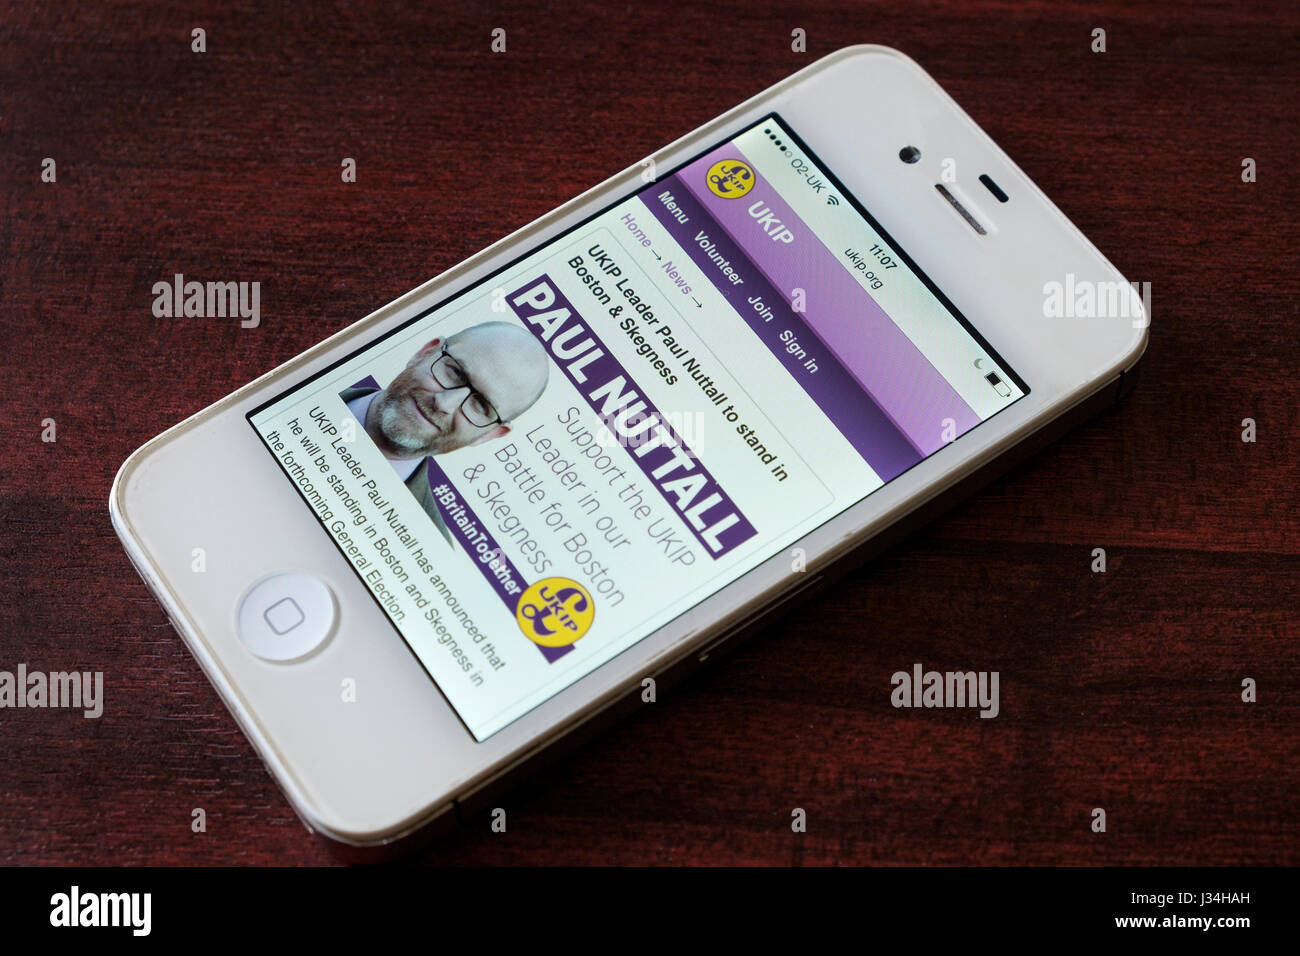 UKIP-Partei-Webseite mit Paul Nuttall-Anweisung für den 2017 General #GE2017 Wahlkampf auf einem Smartphone Handy-Bildschirm angezeigt Stockfoto